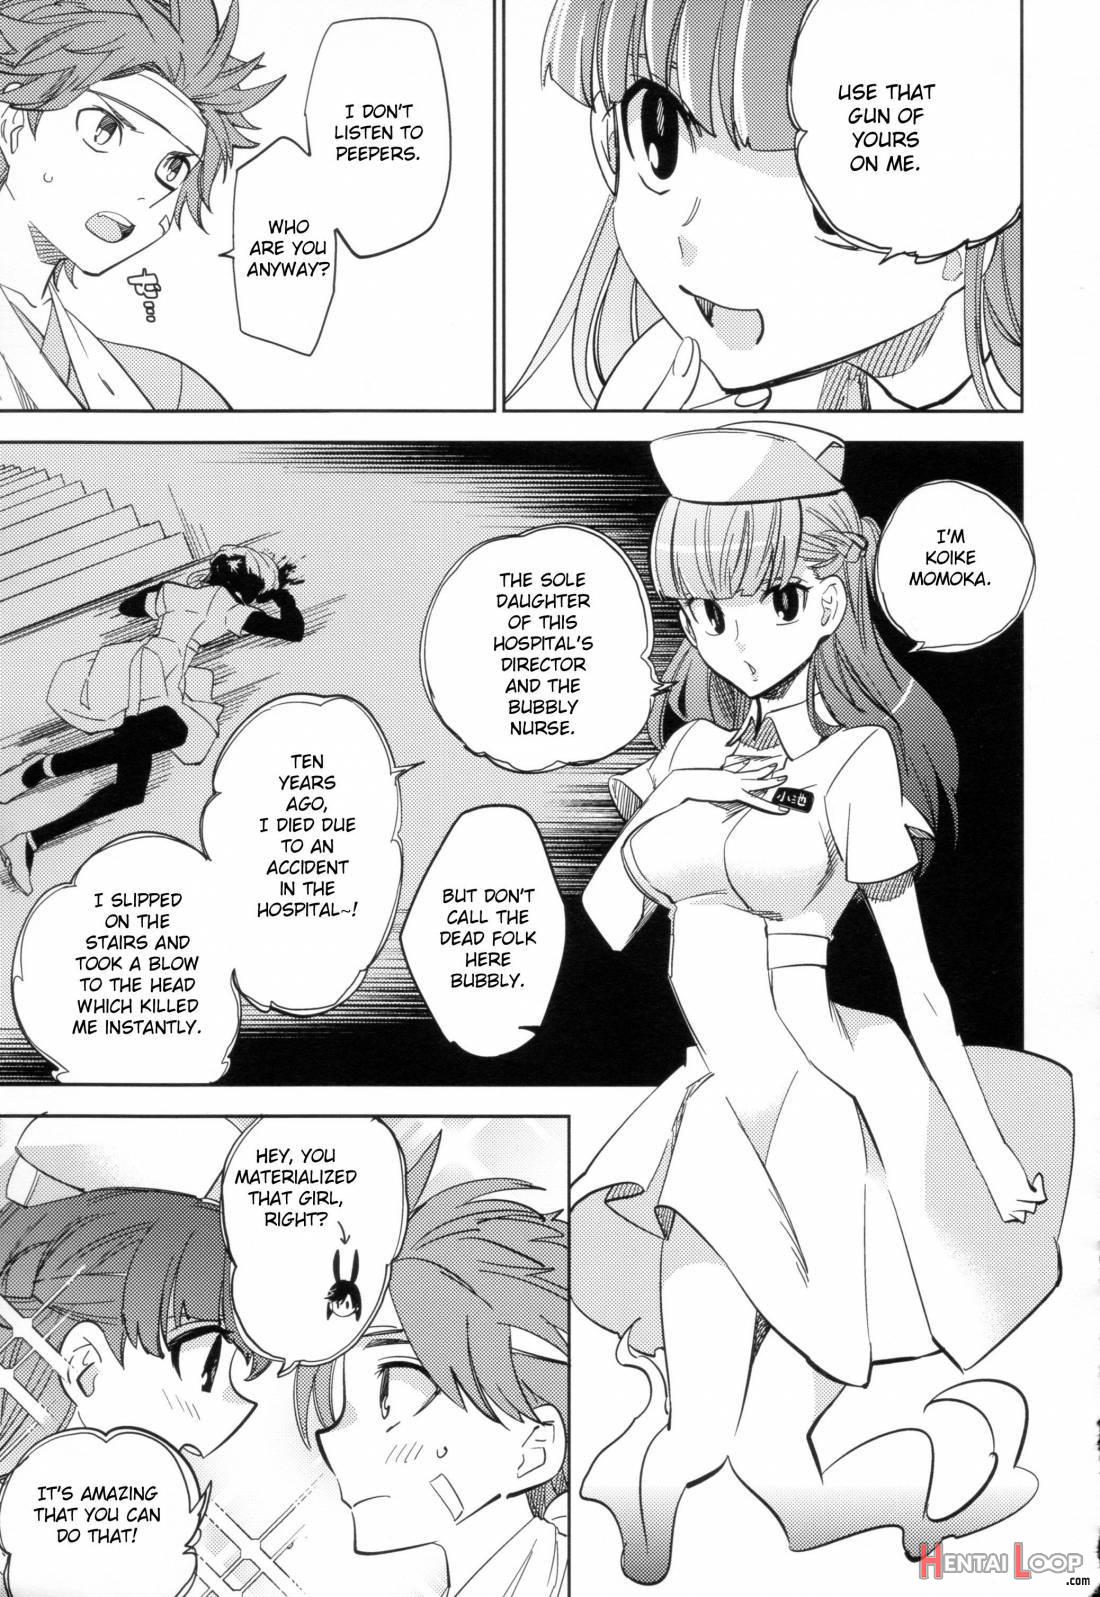 Yojo-han Bunny Part 2 page 18